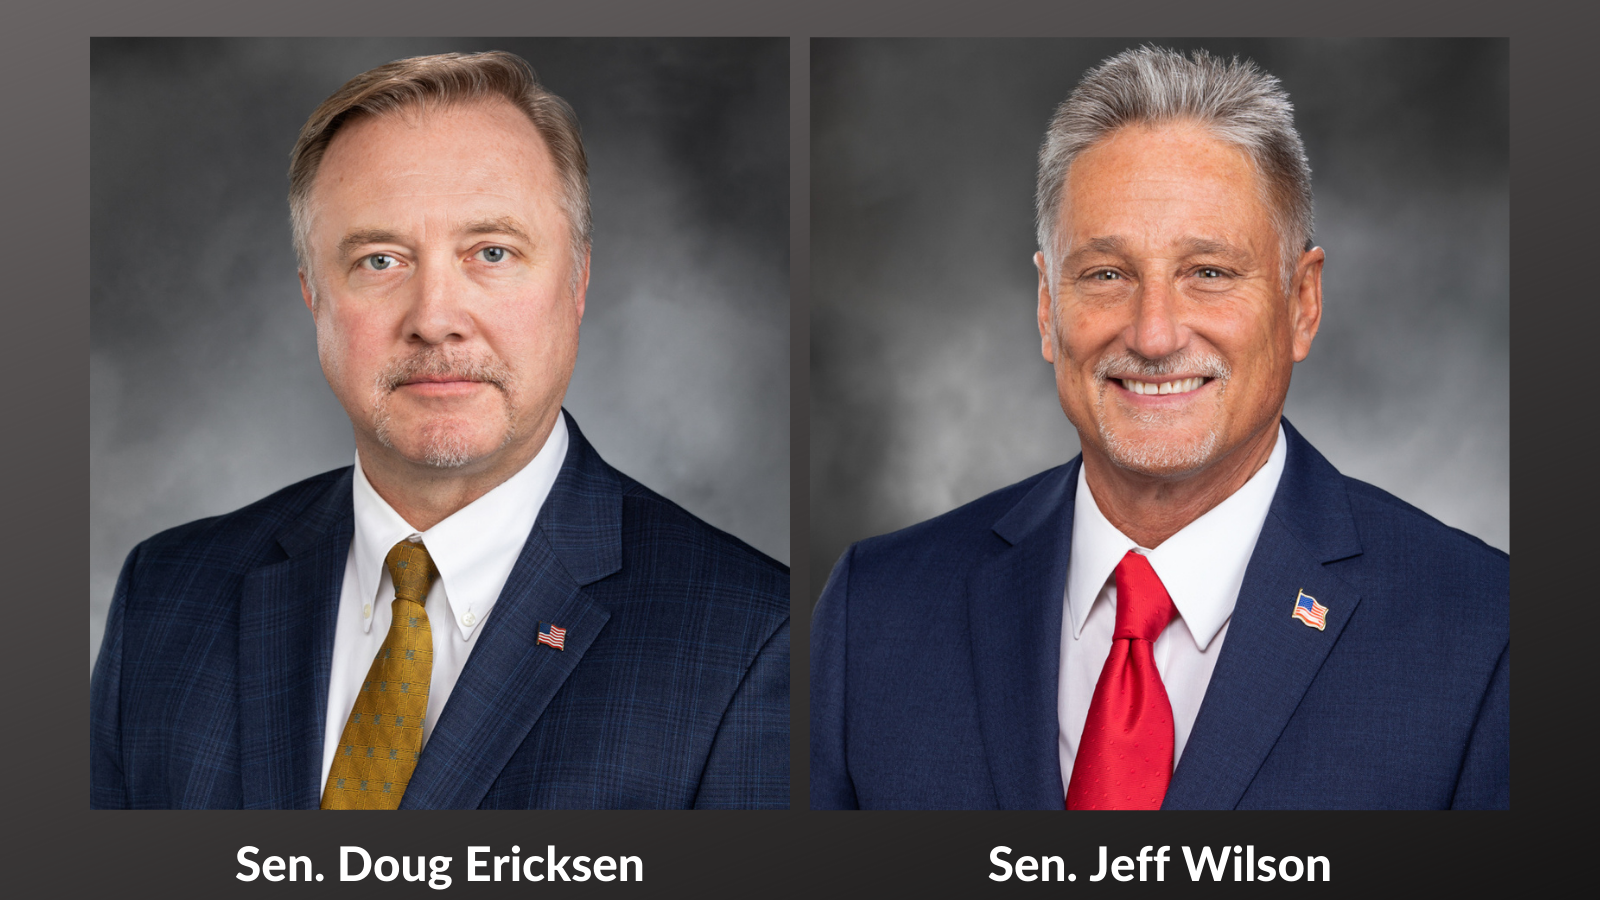 AUDIO: Sen. Jeff Wilson issues statement on passing of Sen. Doug Ericksen